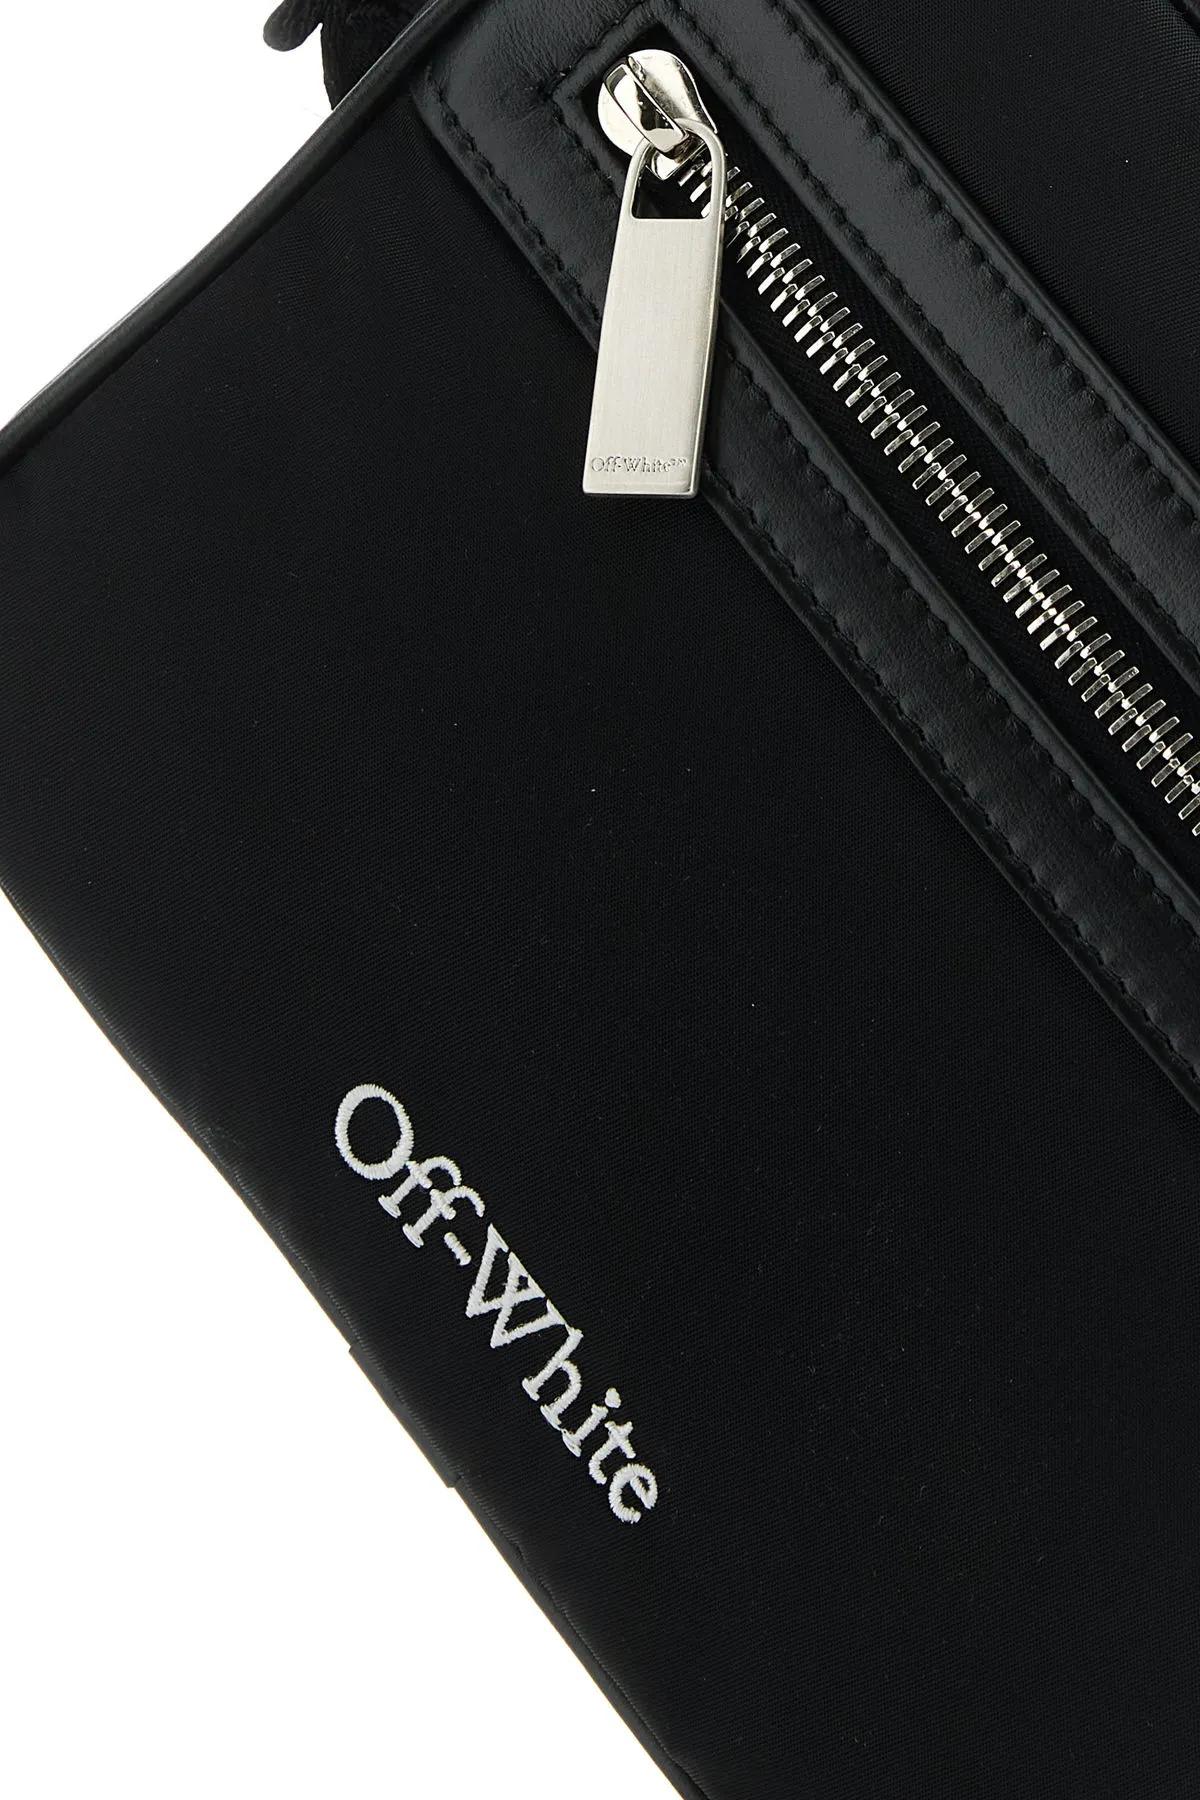 Shop Off-white Black Nylon Core Crossbody Bag In Nero